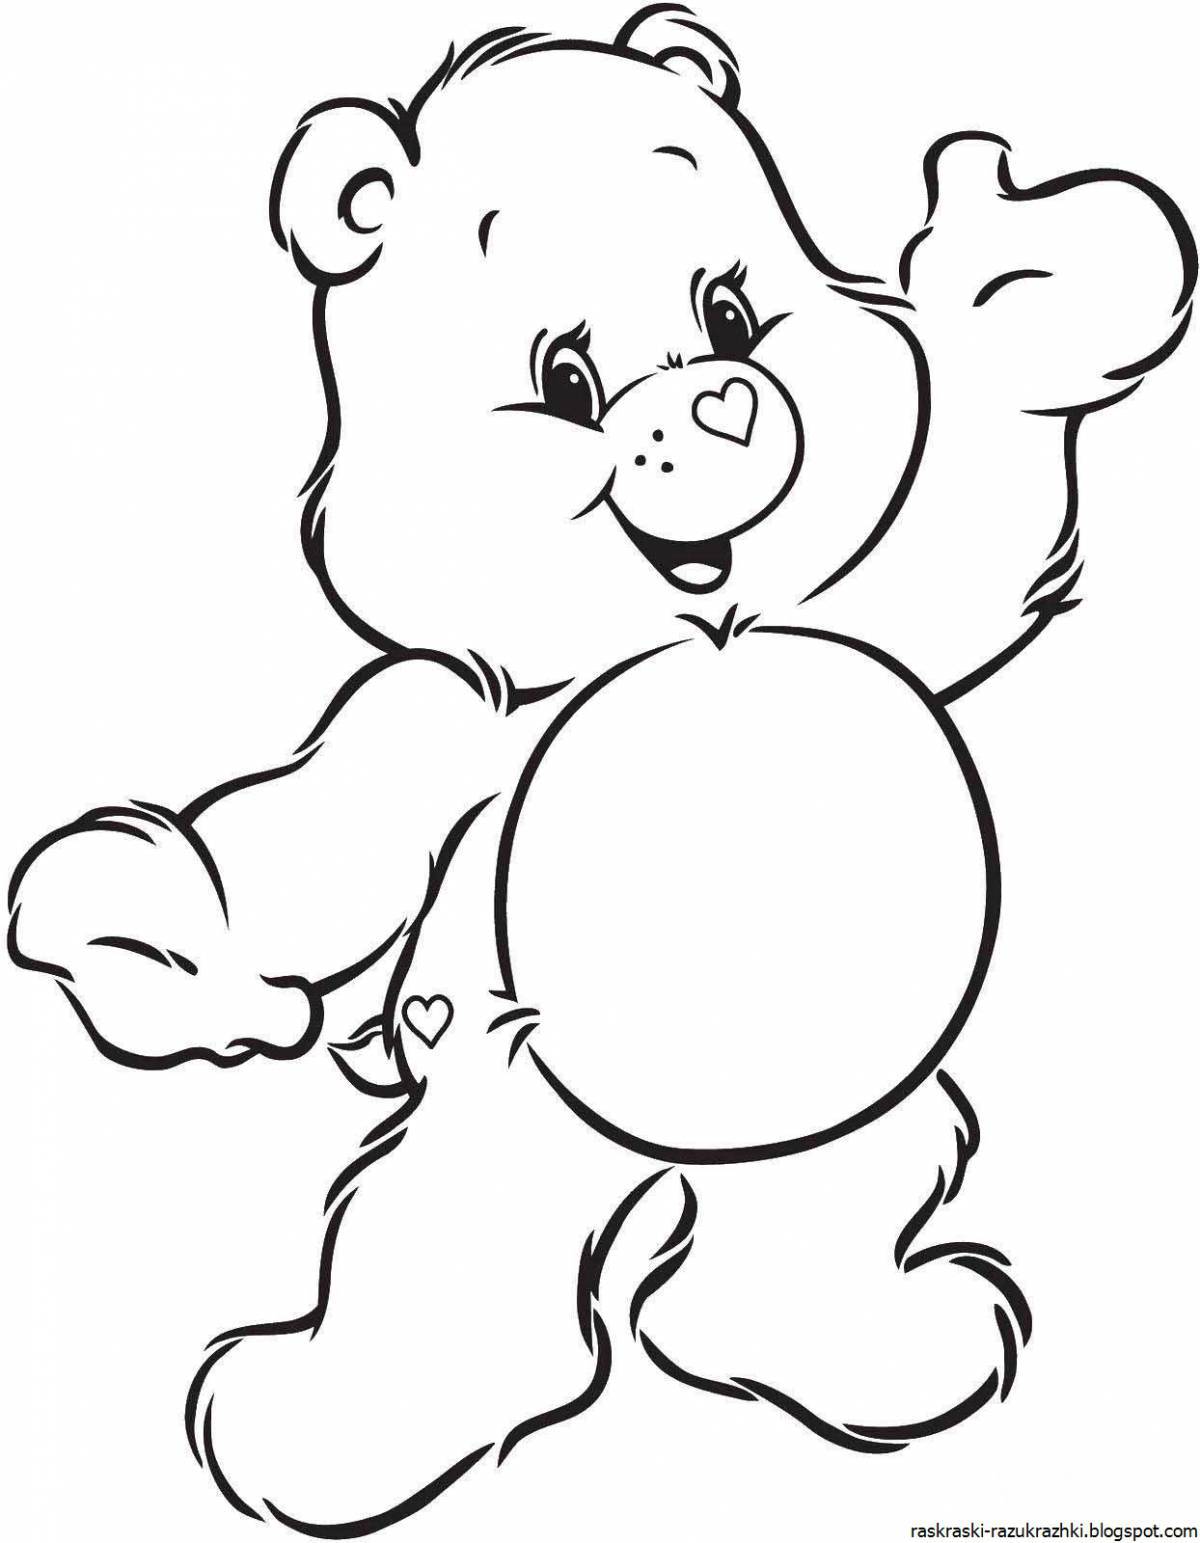 Раскраска дружелюбный медведь для детей